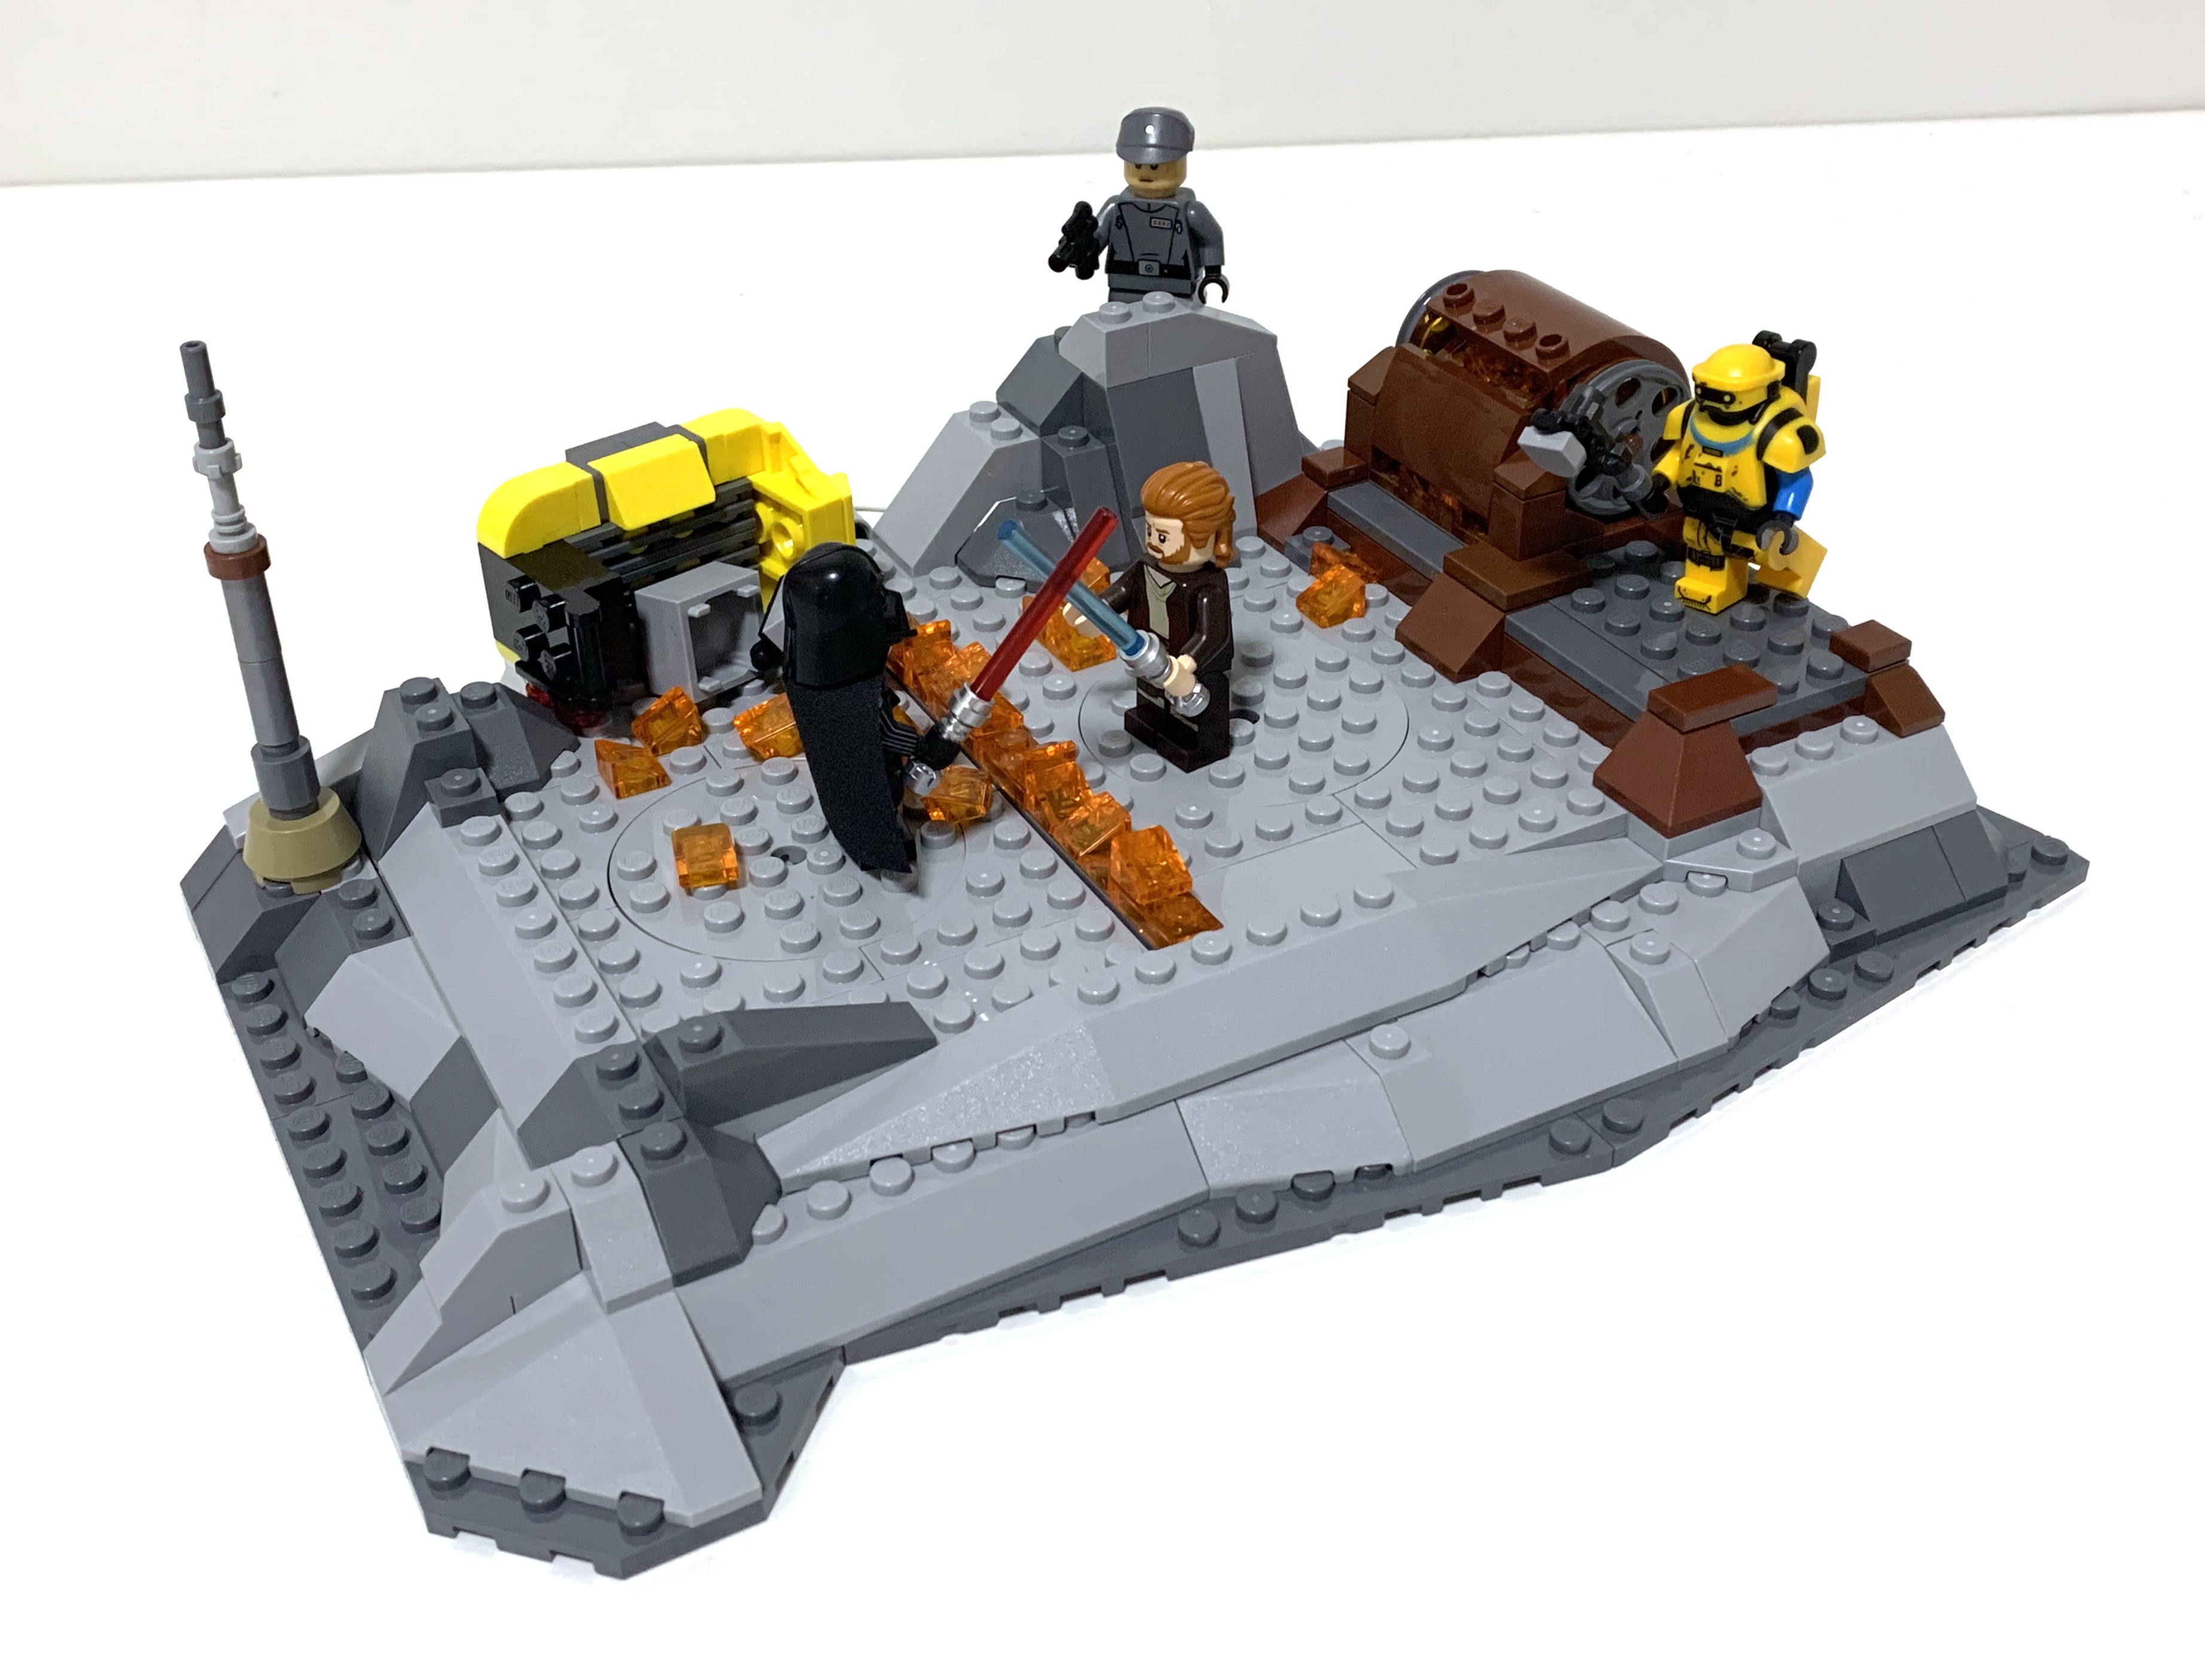 Asociación Civilizar pestaña Review: LEGO 75334 Obi-Wan Kenobi vs. Darth Vader - Jay's Brick Blog